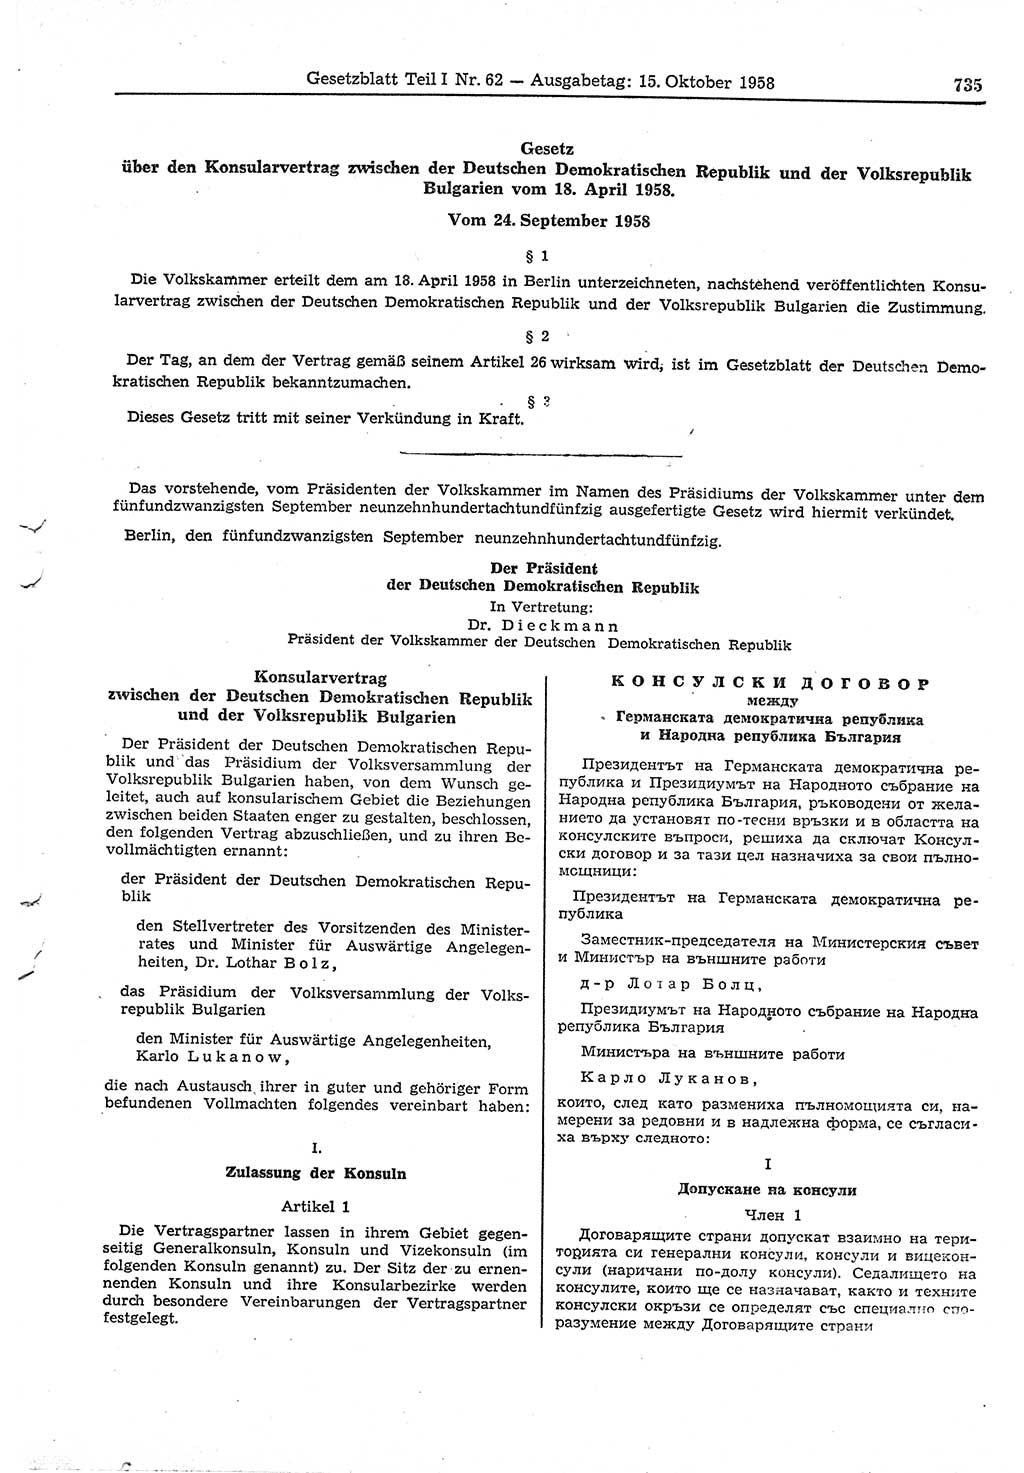 Gesetzblatt (GBl.) der Deutschen Demokratischen Republik (DDR) Teil Ⅰ 1958, Seite 735 (GBl. DDR Ⅰ 1958, S. 735)